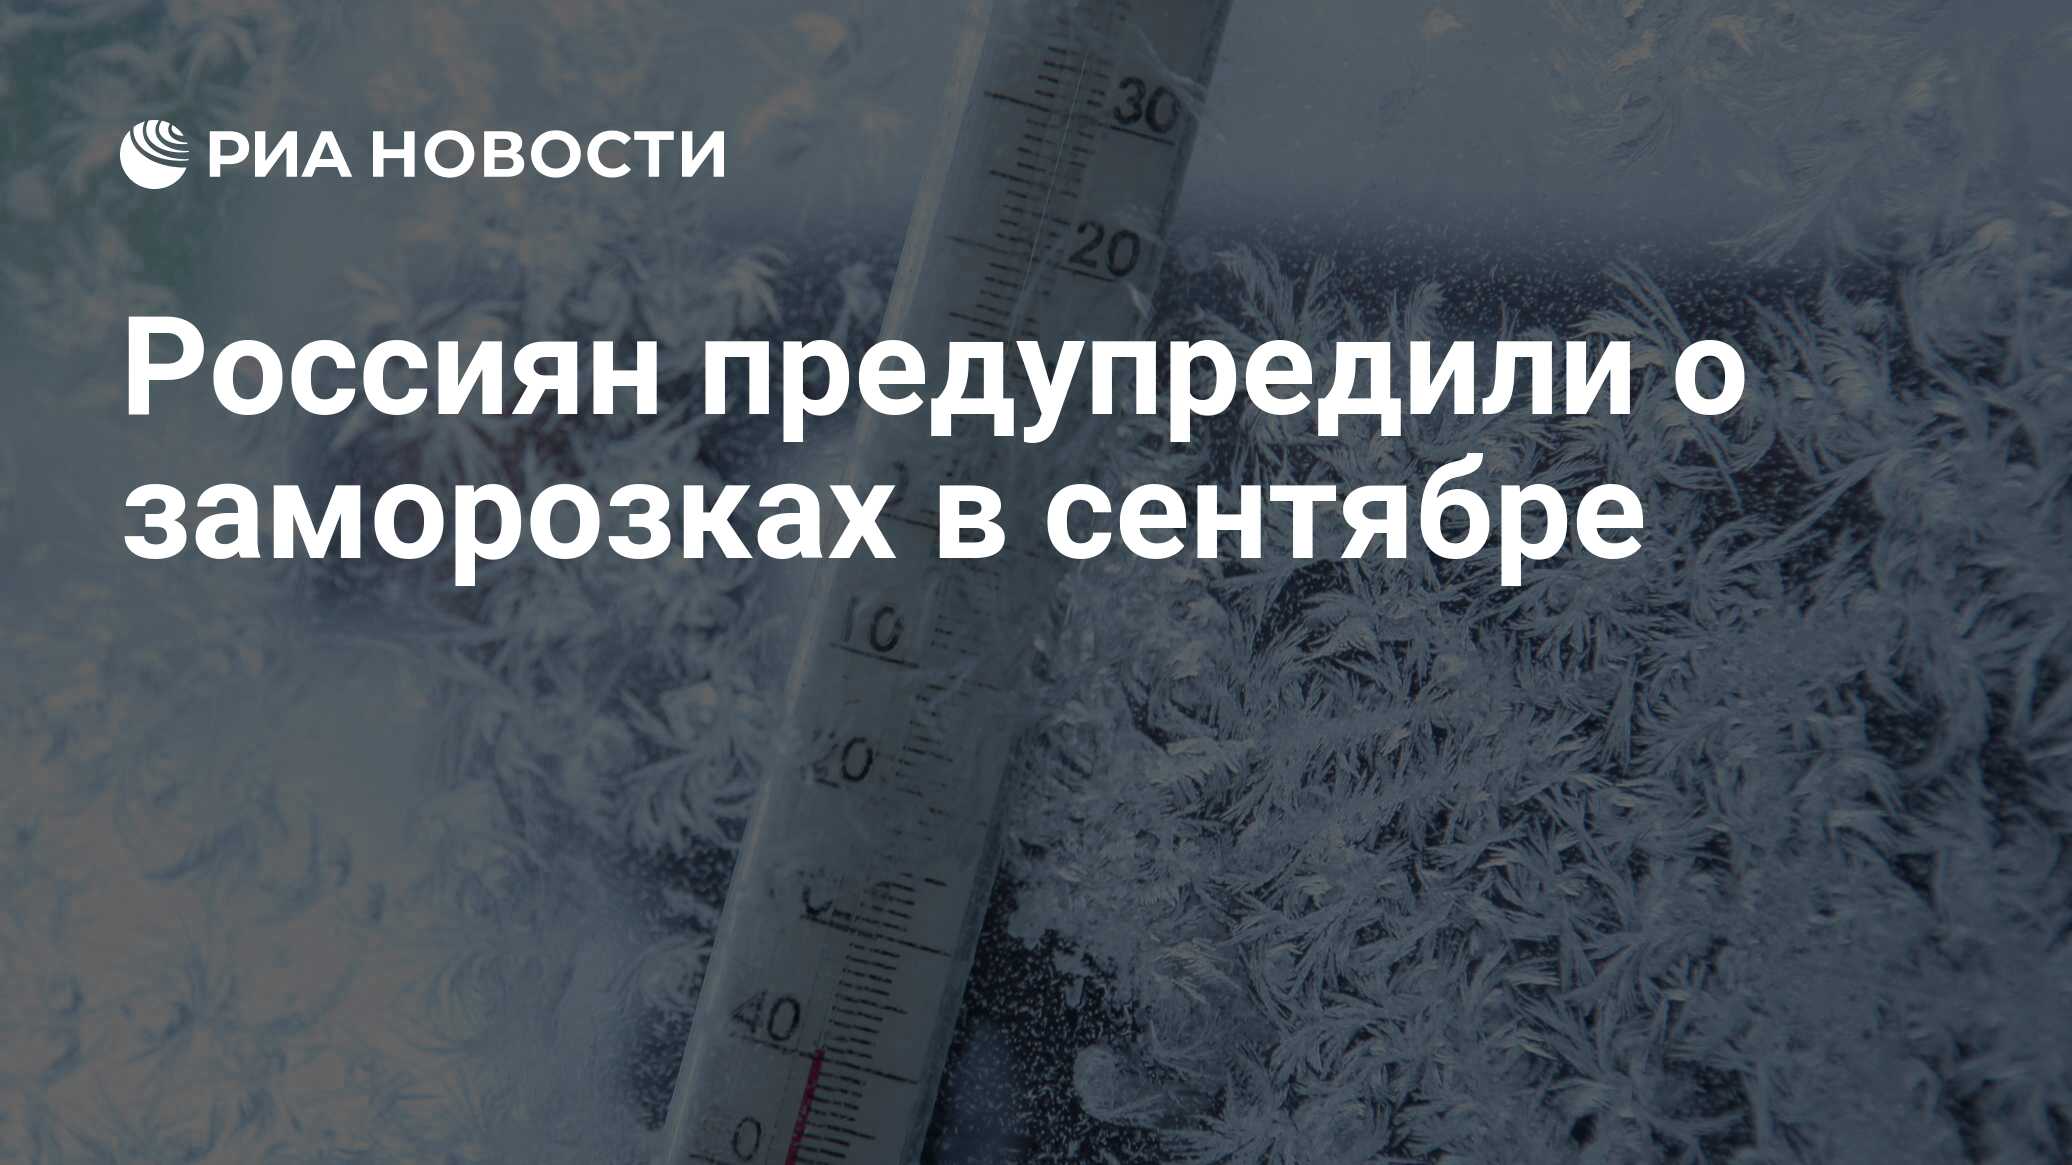 Система заморозки является самой сильной. Морозы в России сейчас. Сильный Мороз характеристика. Мороз в Европе. Дни заморозки в подарок.